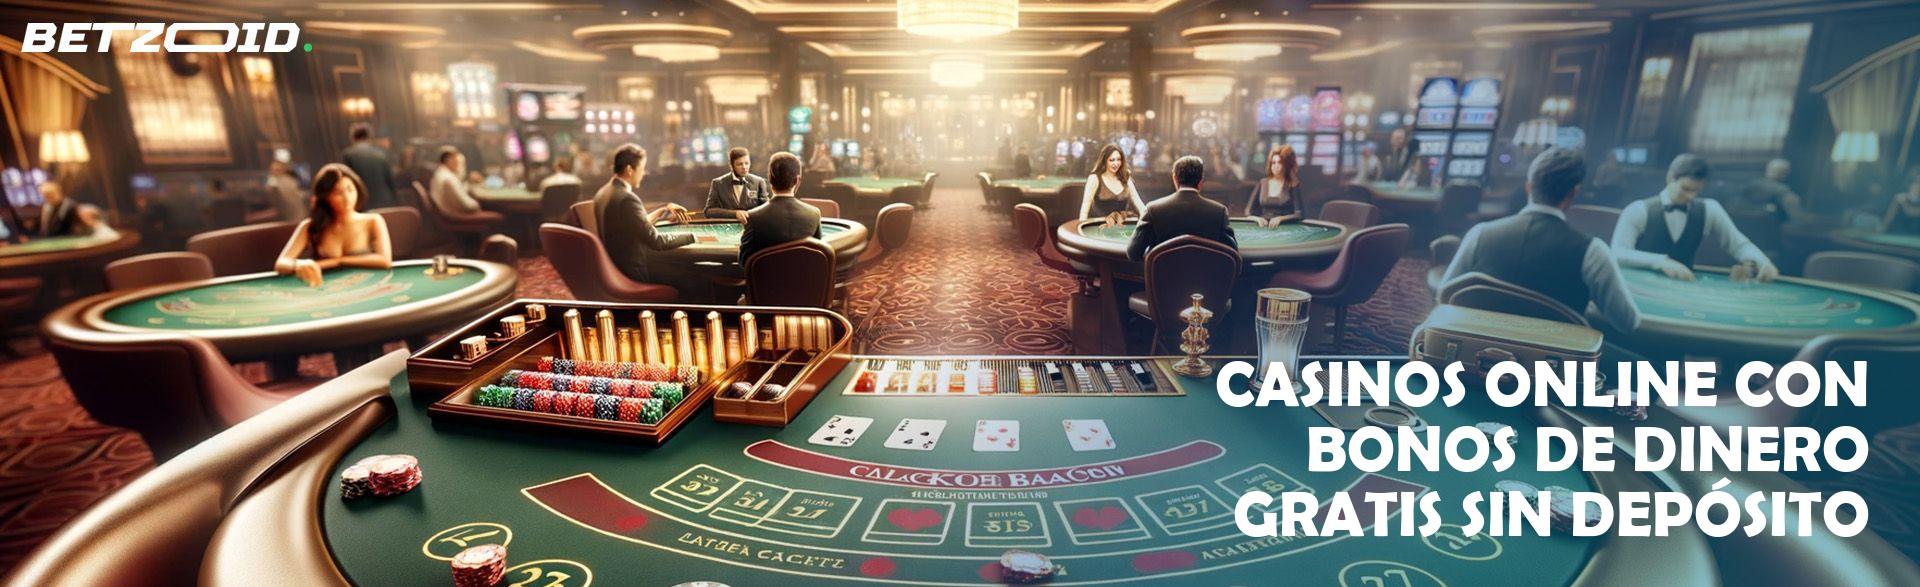 Casinos Online con Bonos de Dinero Gratis sin Depósito.